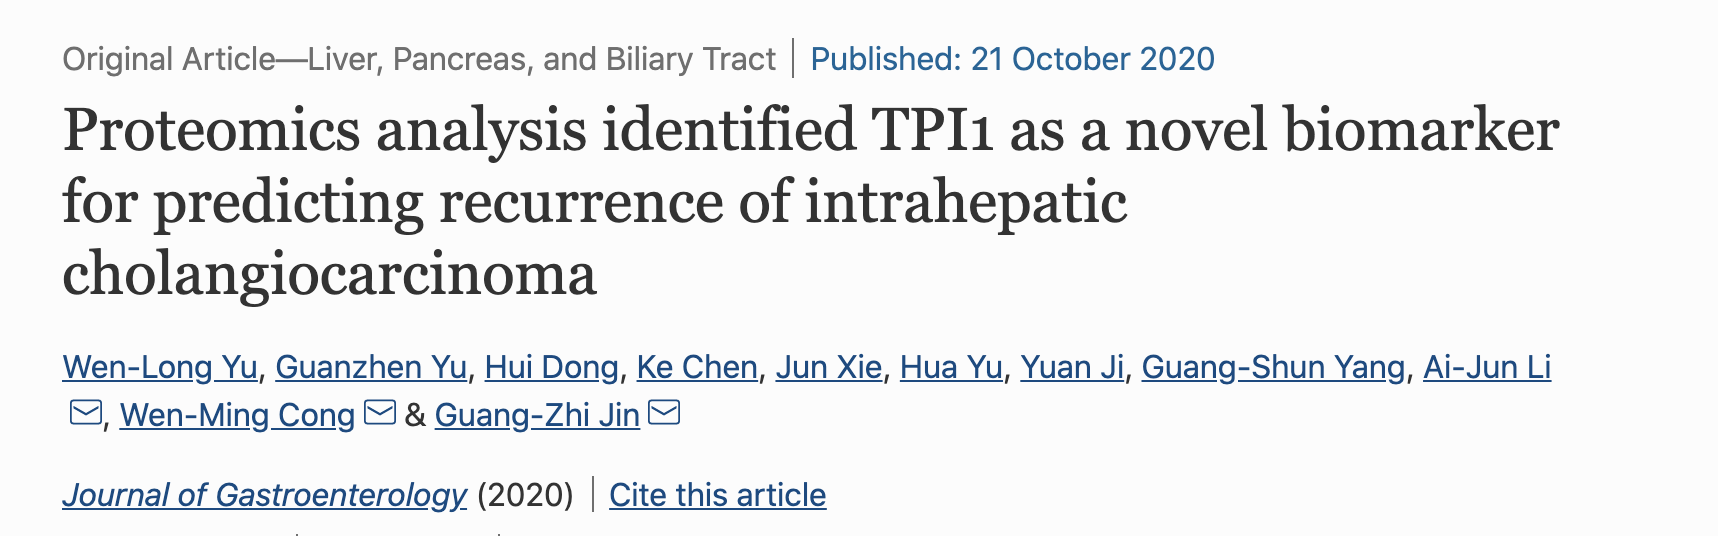 蛋白質組學分析確定TPI1是預測肝內膽管癌復發的新型生物標志物